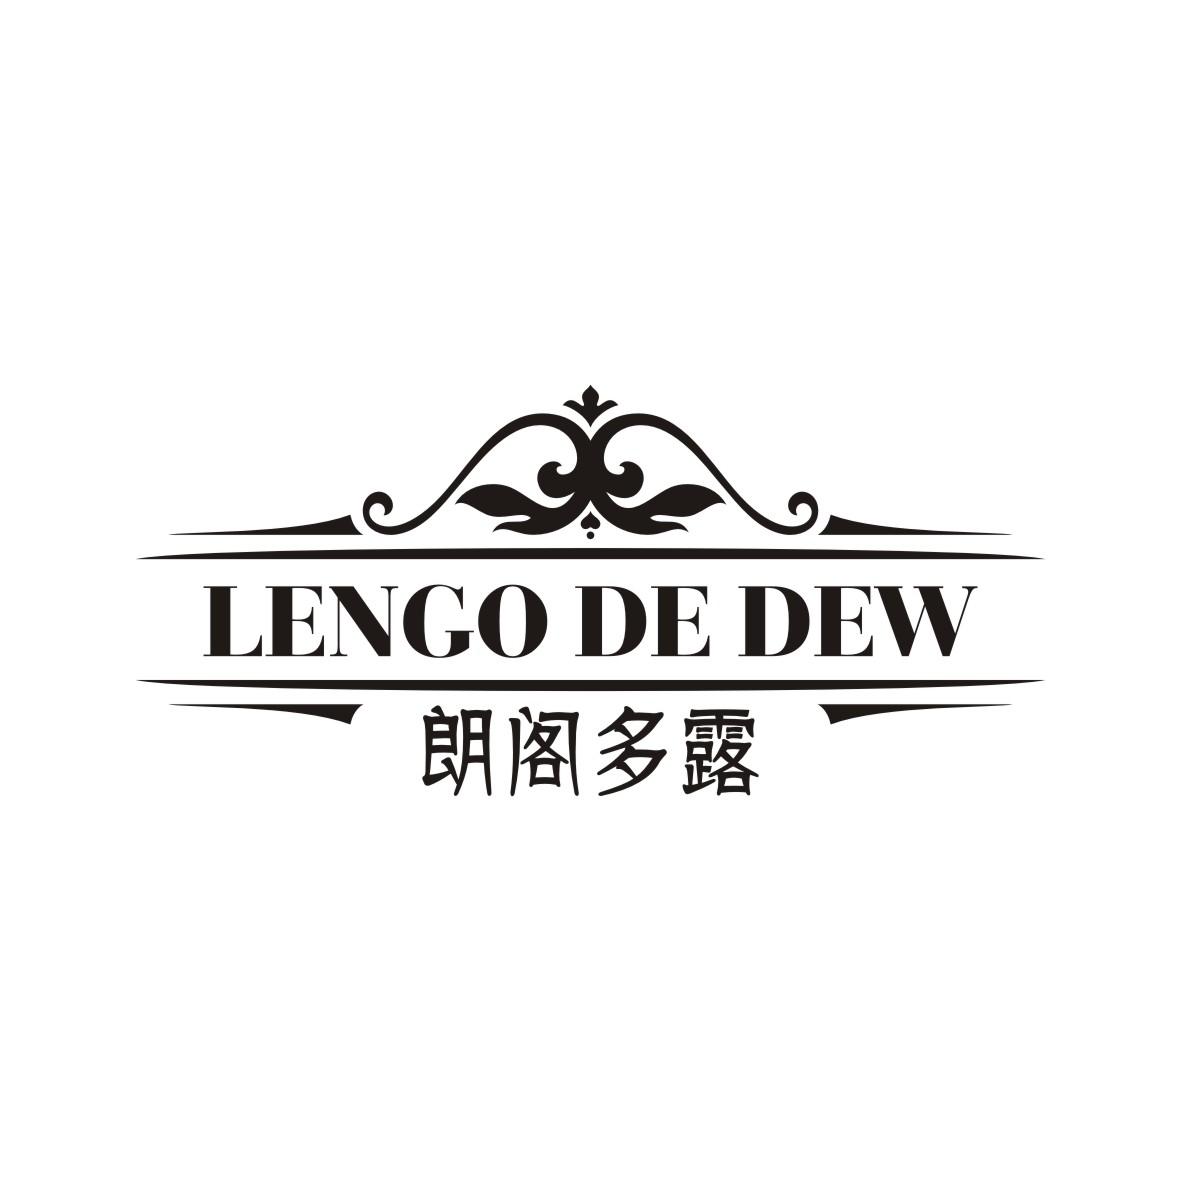 朗阁多露 
Lengo de dew